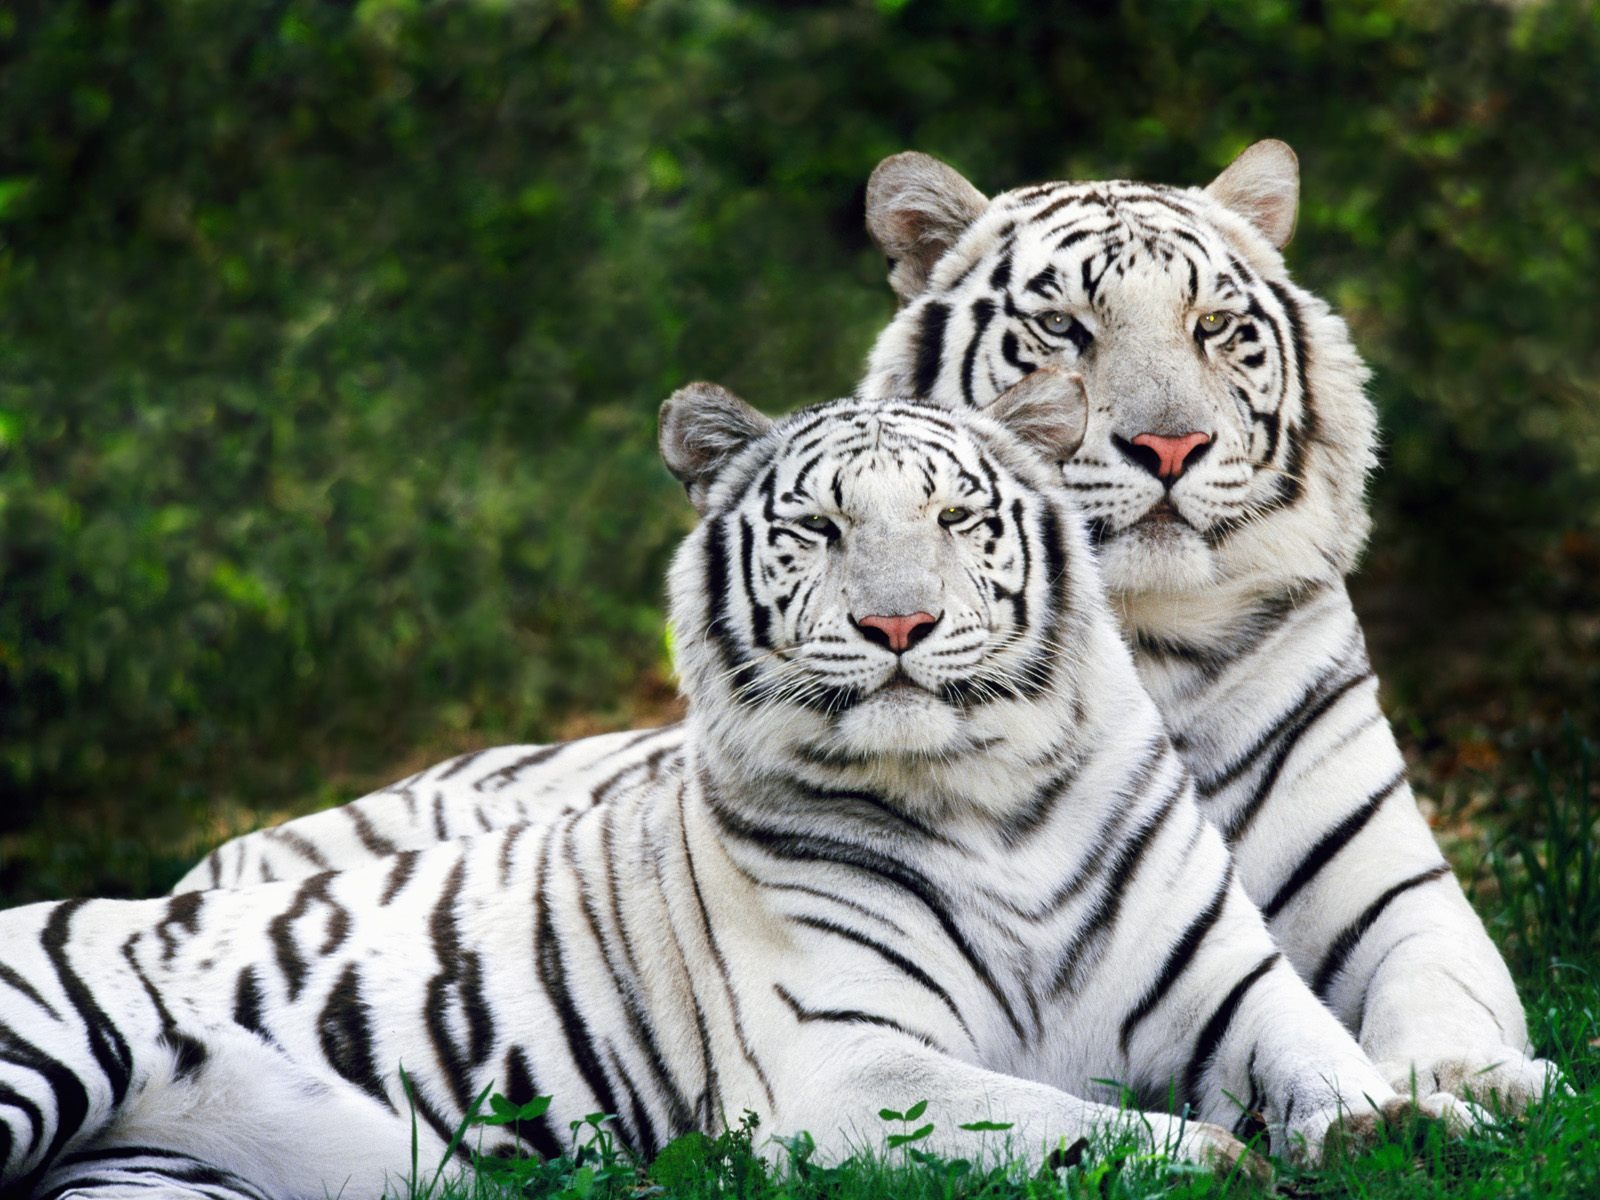 Fond d'ecran Tigres blancs